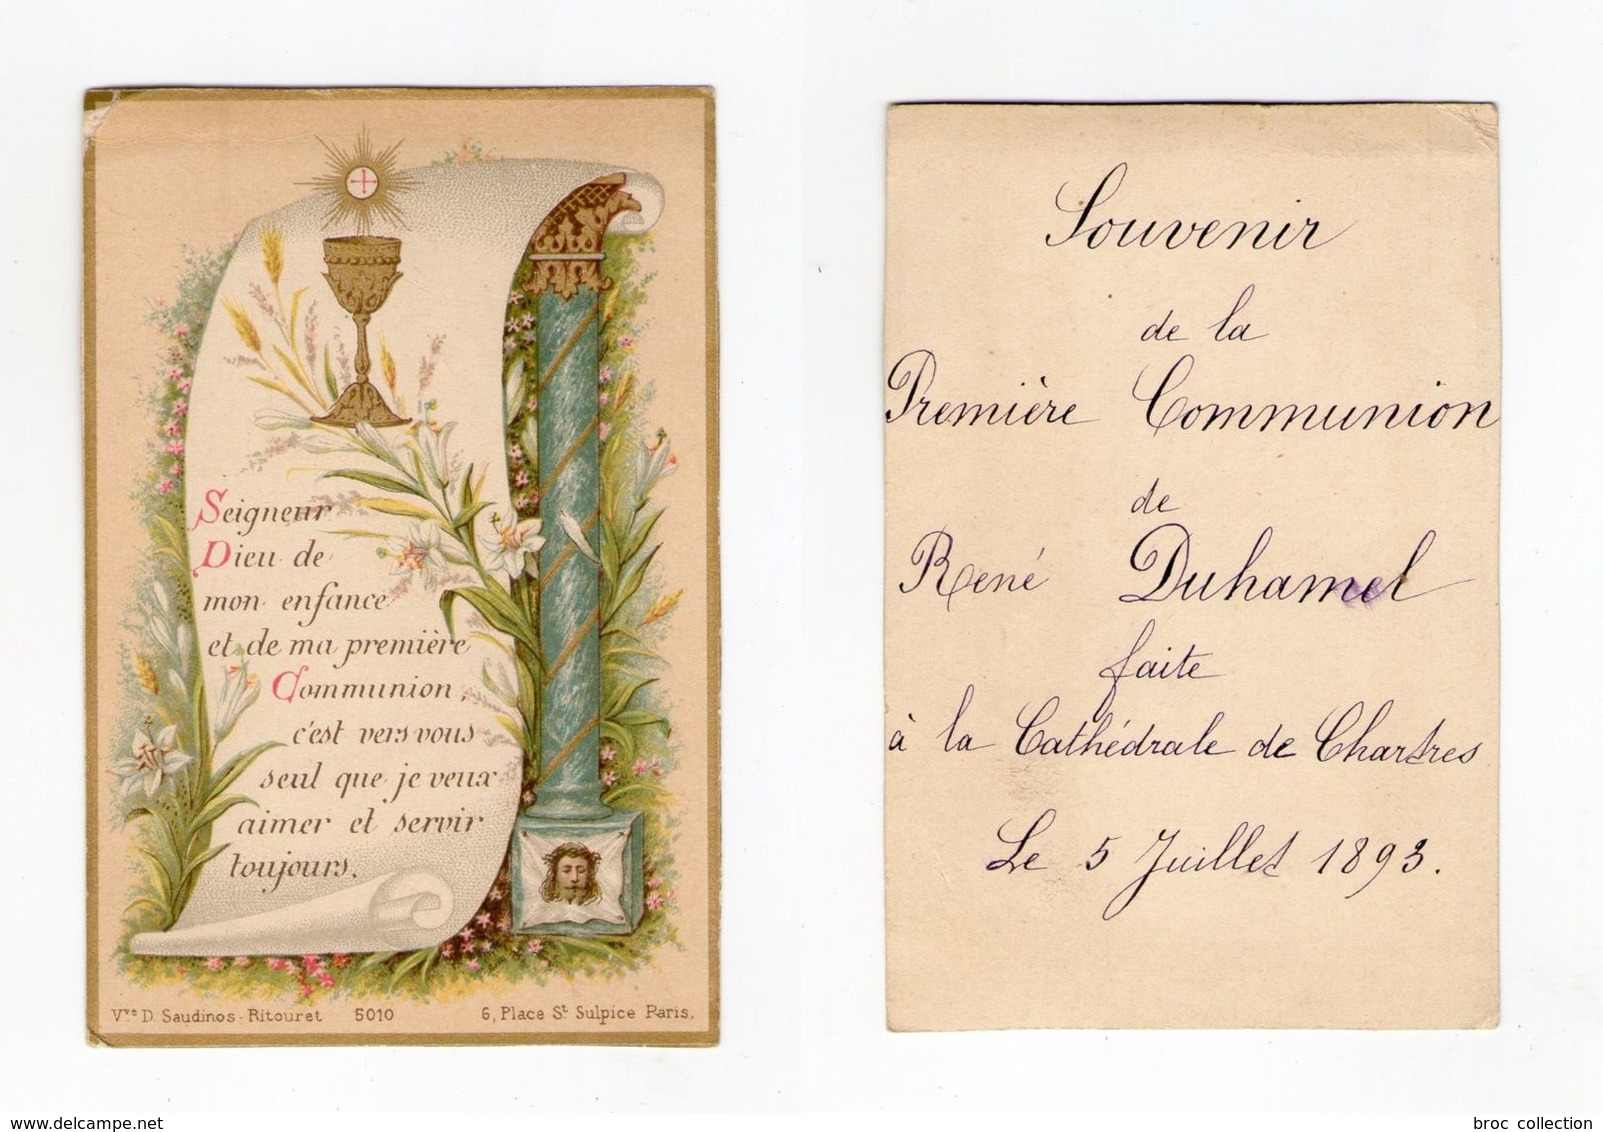 Chartres, 1re Communion René Duhamel, 1893, Voile De Sainte Véronique, Vve D. Saudinos-Ritouret N° 5010 - Images Religieuses